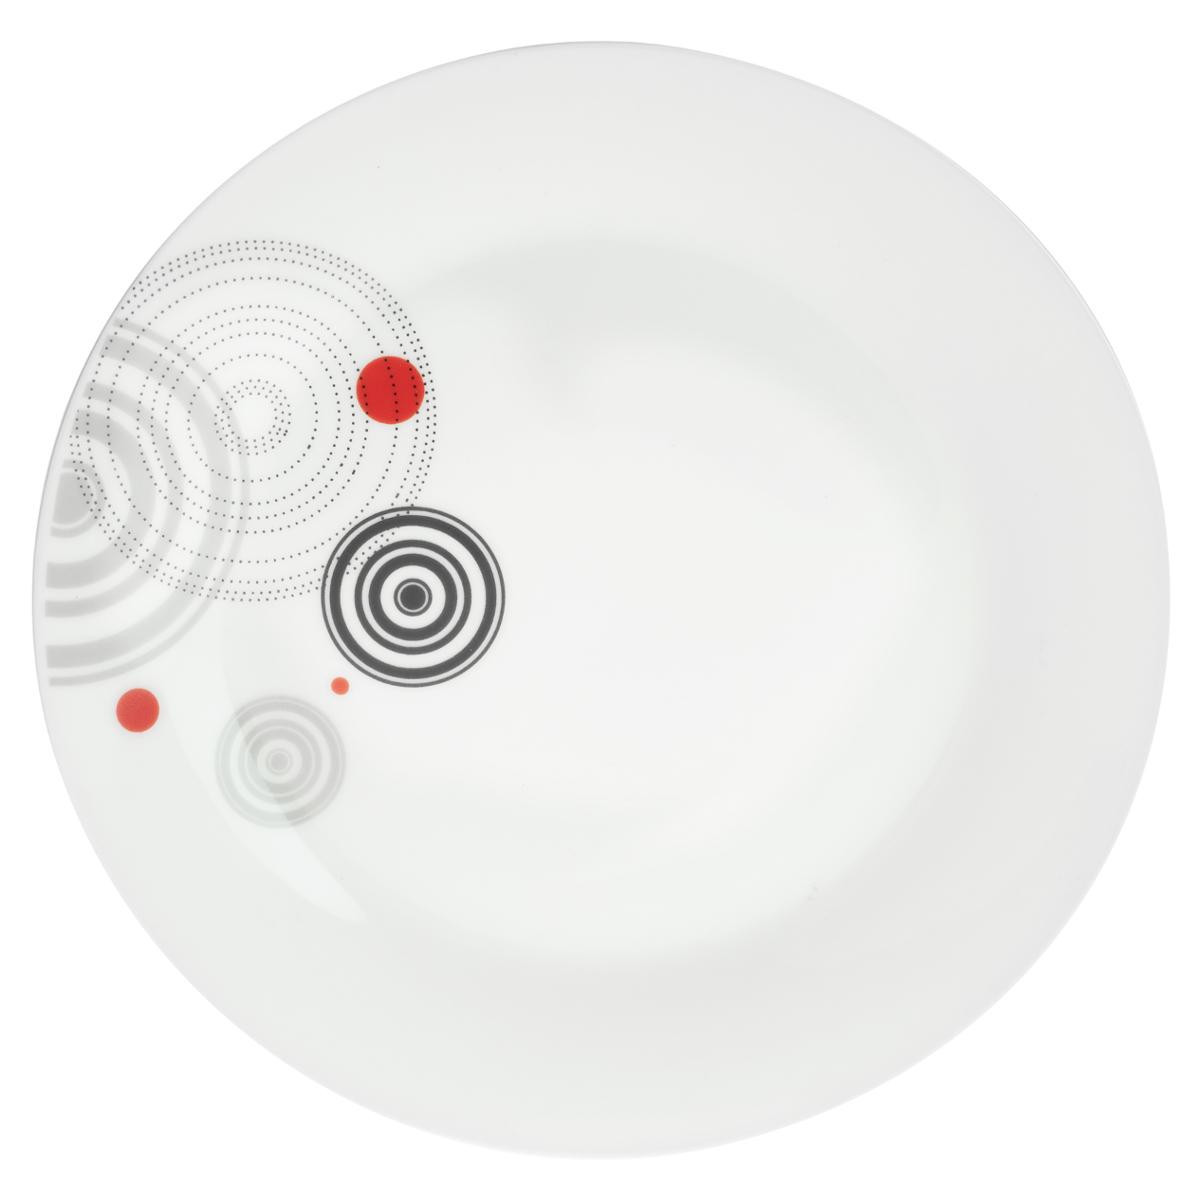 Service de table en porcelaine - blanc - 18 pièces - 6 assiettes plates - 6  assiettes à dessert et 6 assiettes à pain - Cdiscount Maison